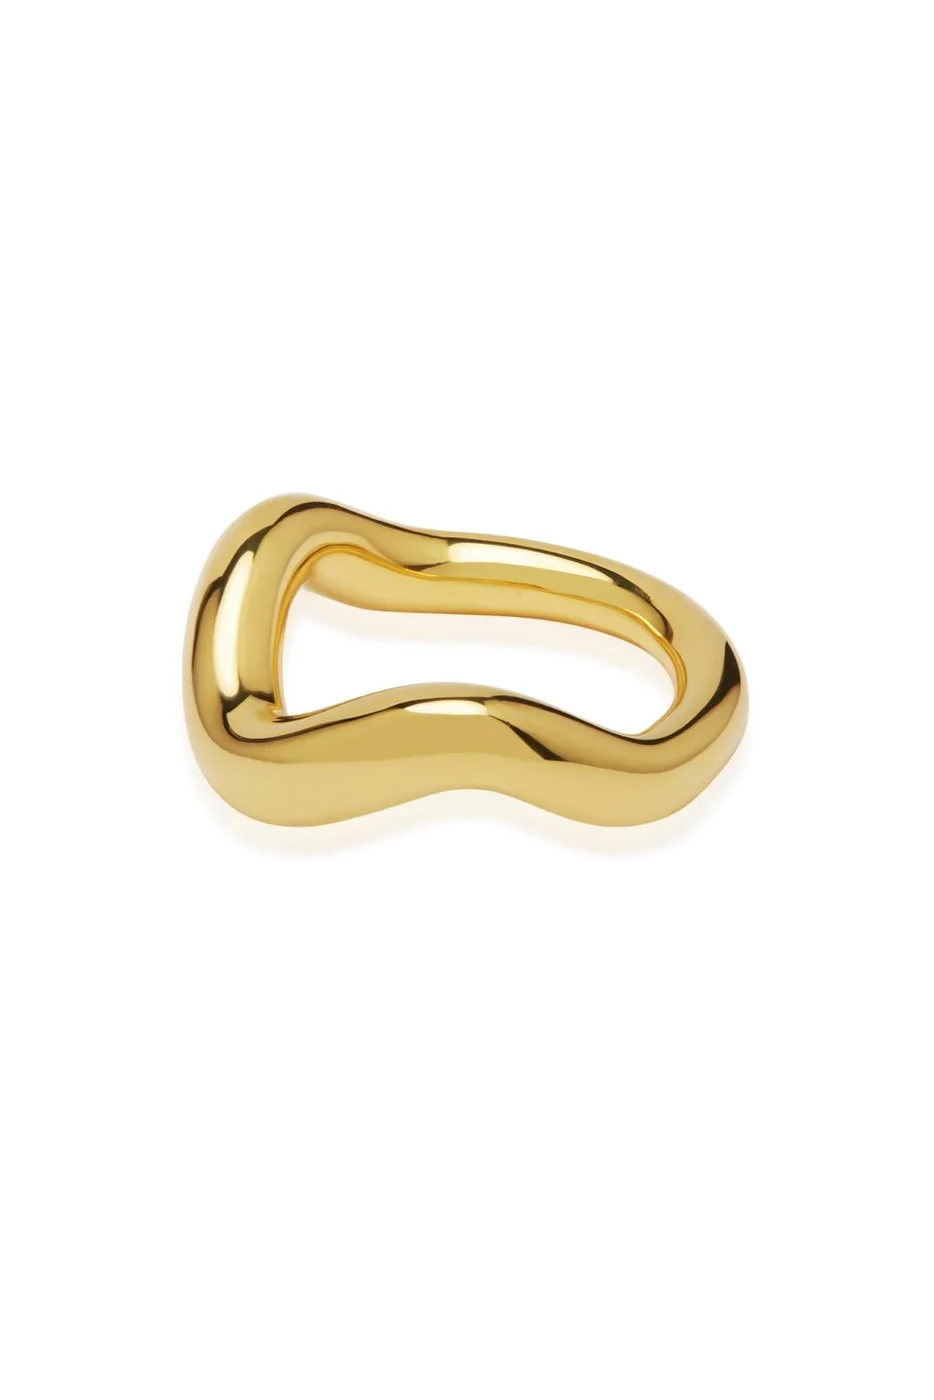 Wabi Sabi Ring - Gold